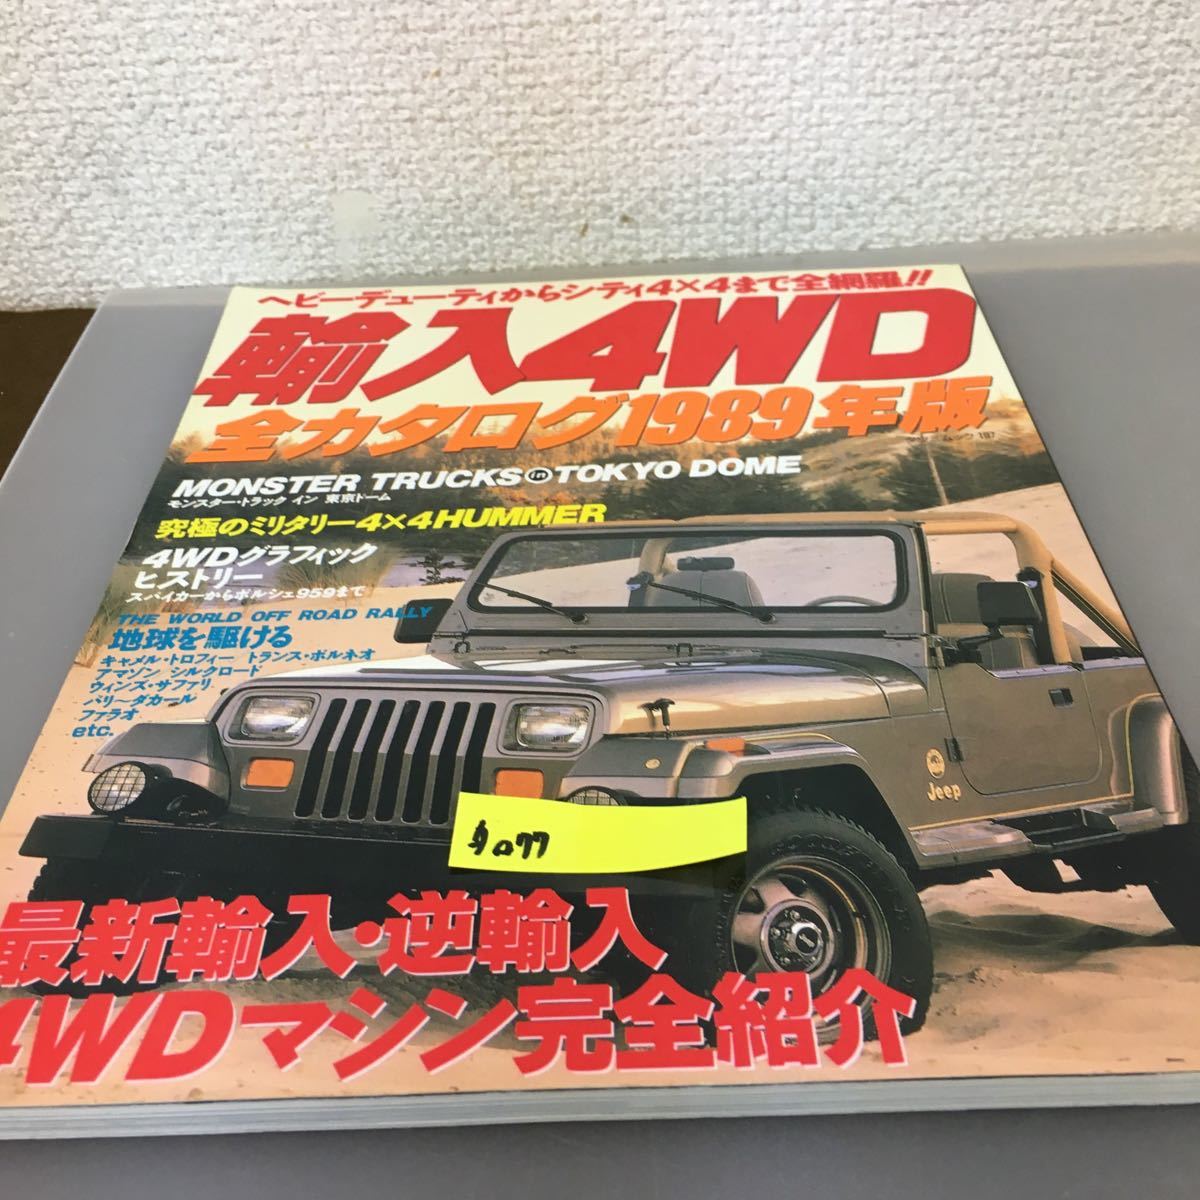 タ077 輸入4WD全カタログ 1989年版 タイプ国別 世界の最新輸入4WD完全紹介 辰巳出版